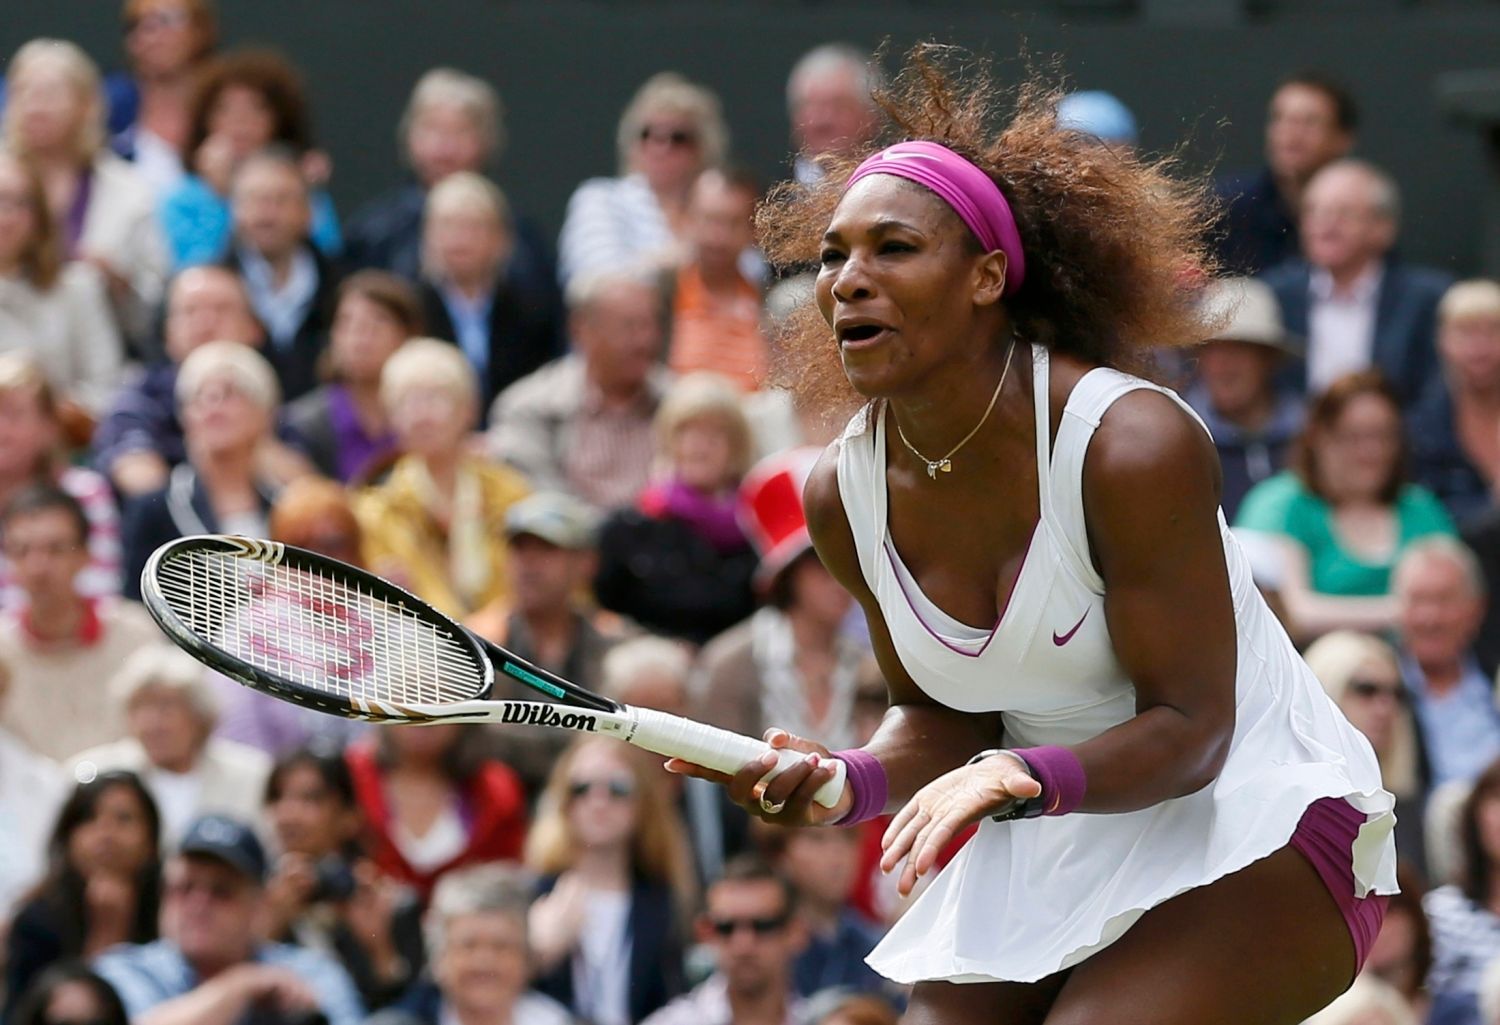 Americká tenistka Serena Williamsová ve finále Wimbledonu 2012 v utkání s Polkou Agnieszkou Radwaňskou.